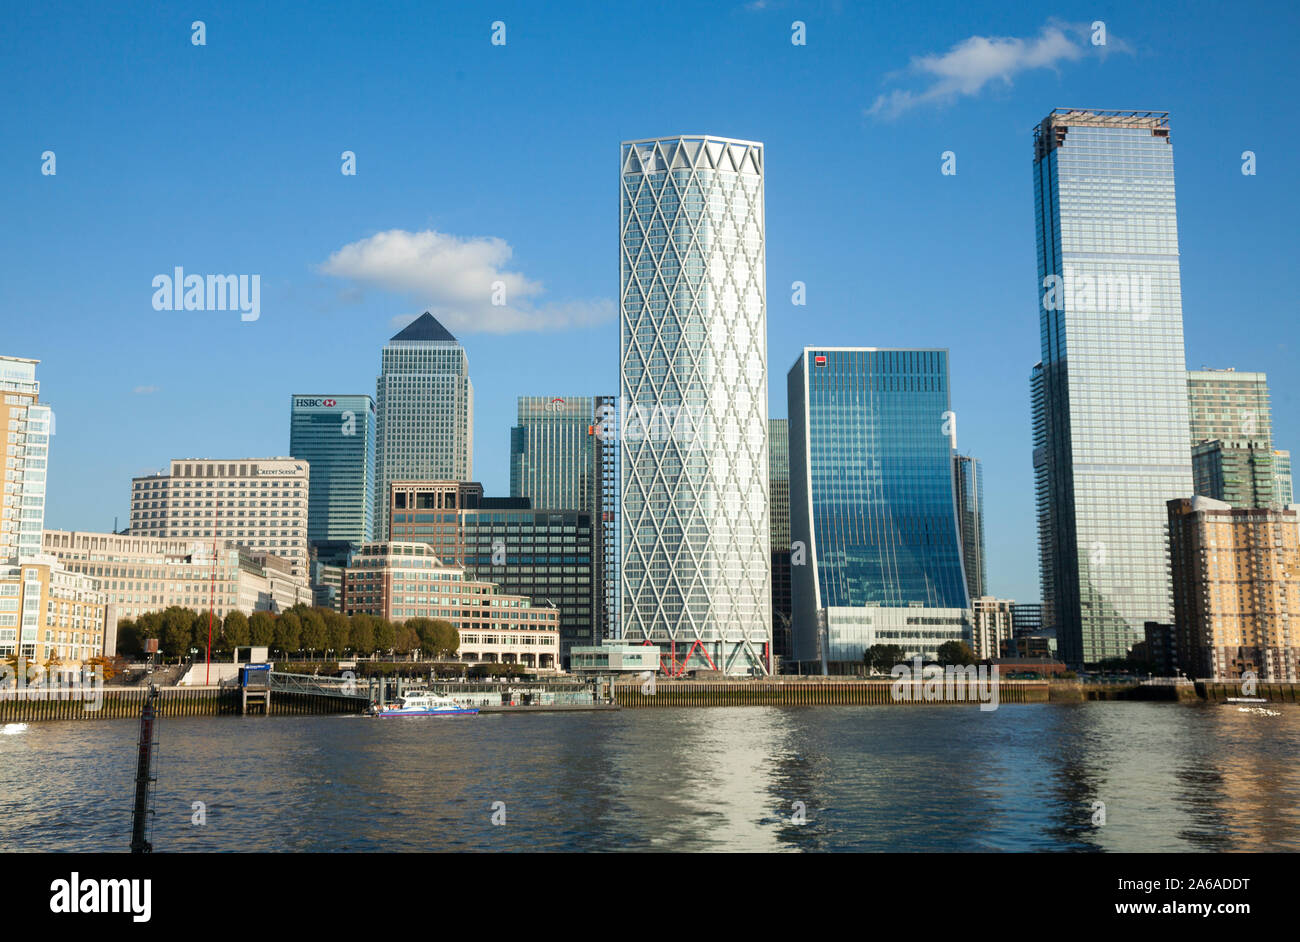 Canary Wharf Docklands Londres photographié en novembre 2019 Banque D'Images